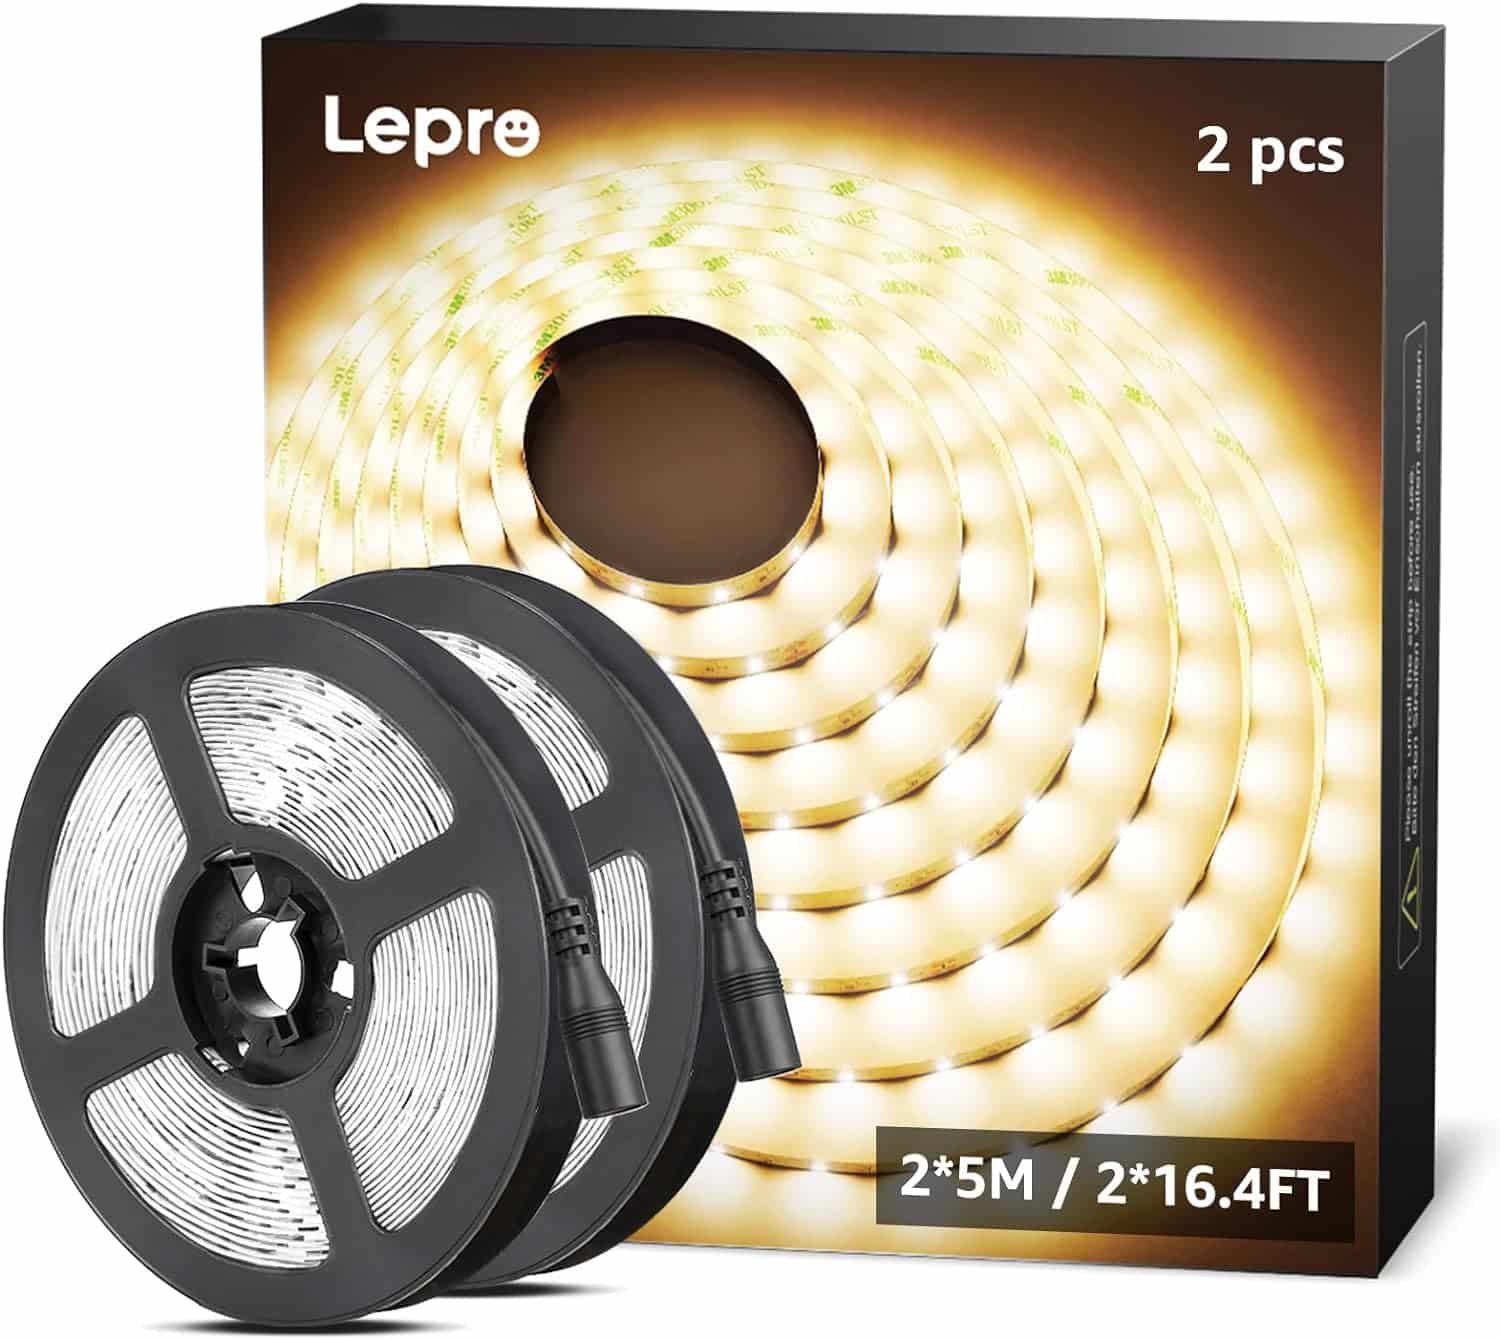 Lepro 12V LED Strip Light Review